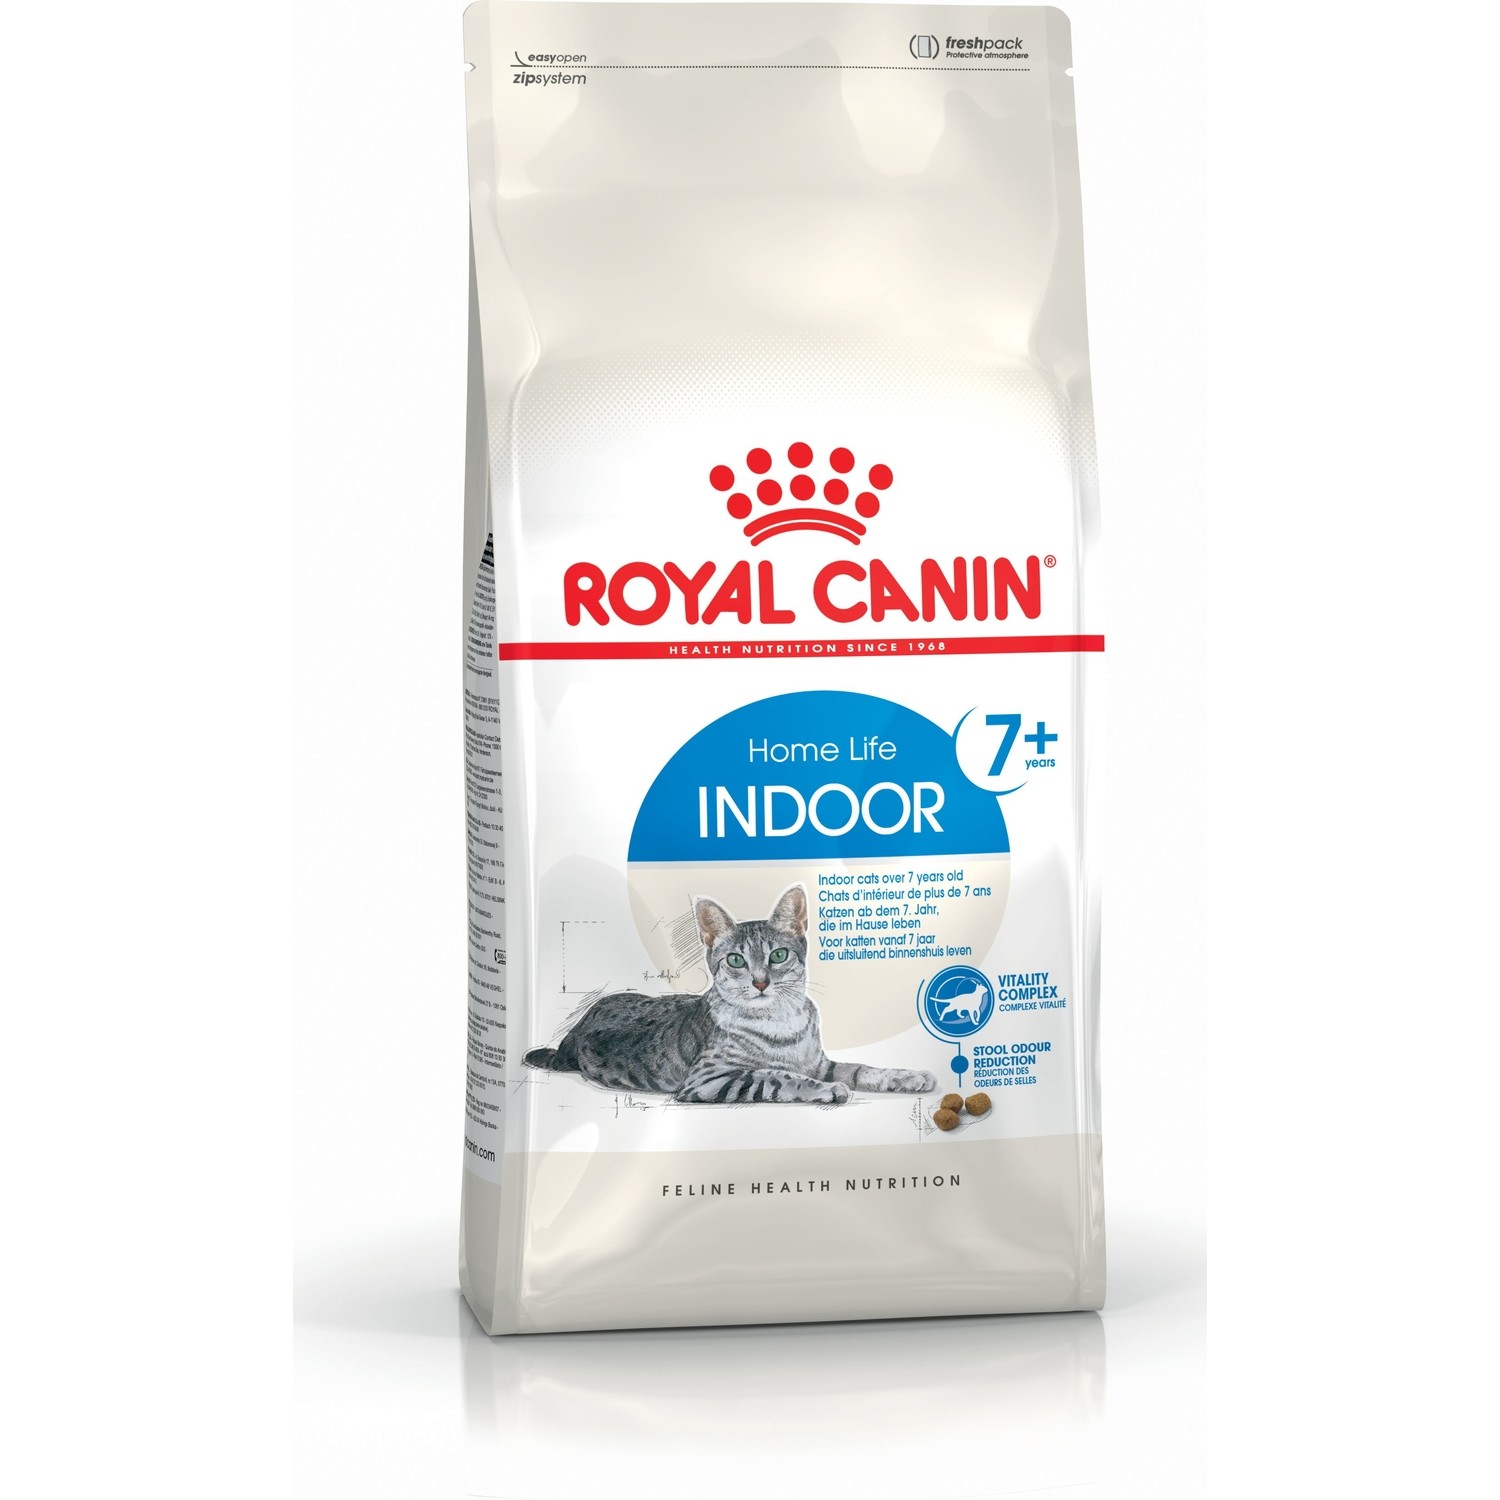 Royal Canin Indoor +7 Evde Yaşayan Yaşlı Kuru Kedi Maması Fiyatı